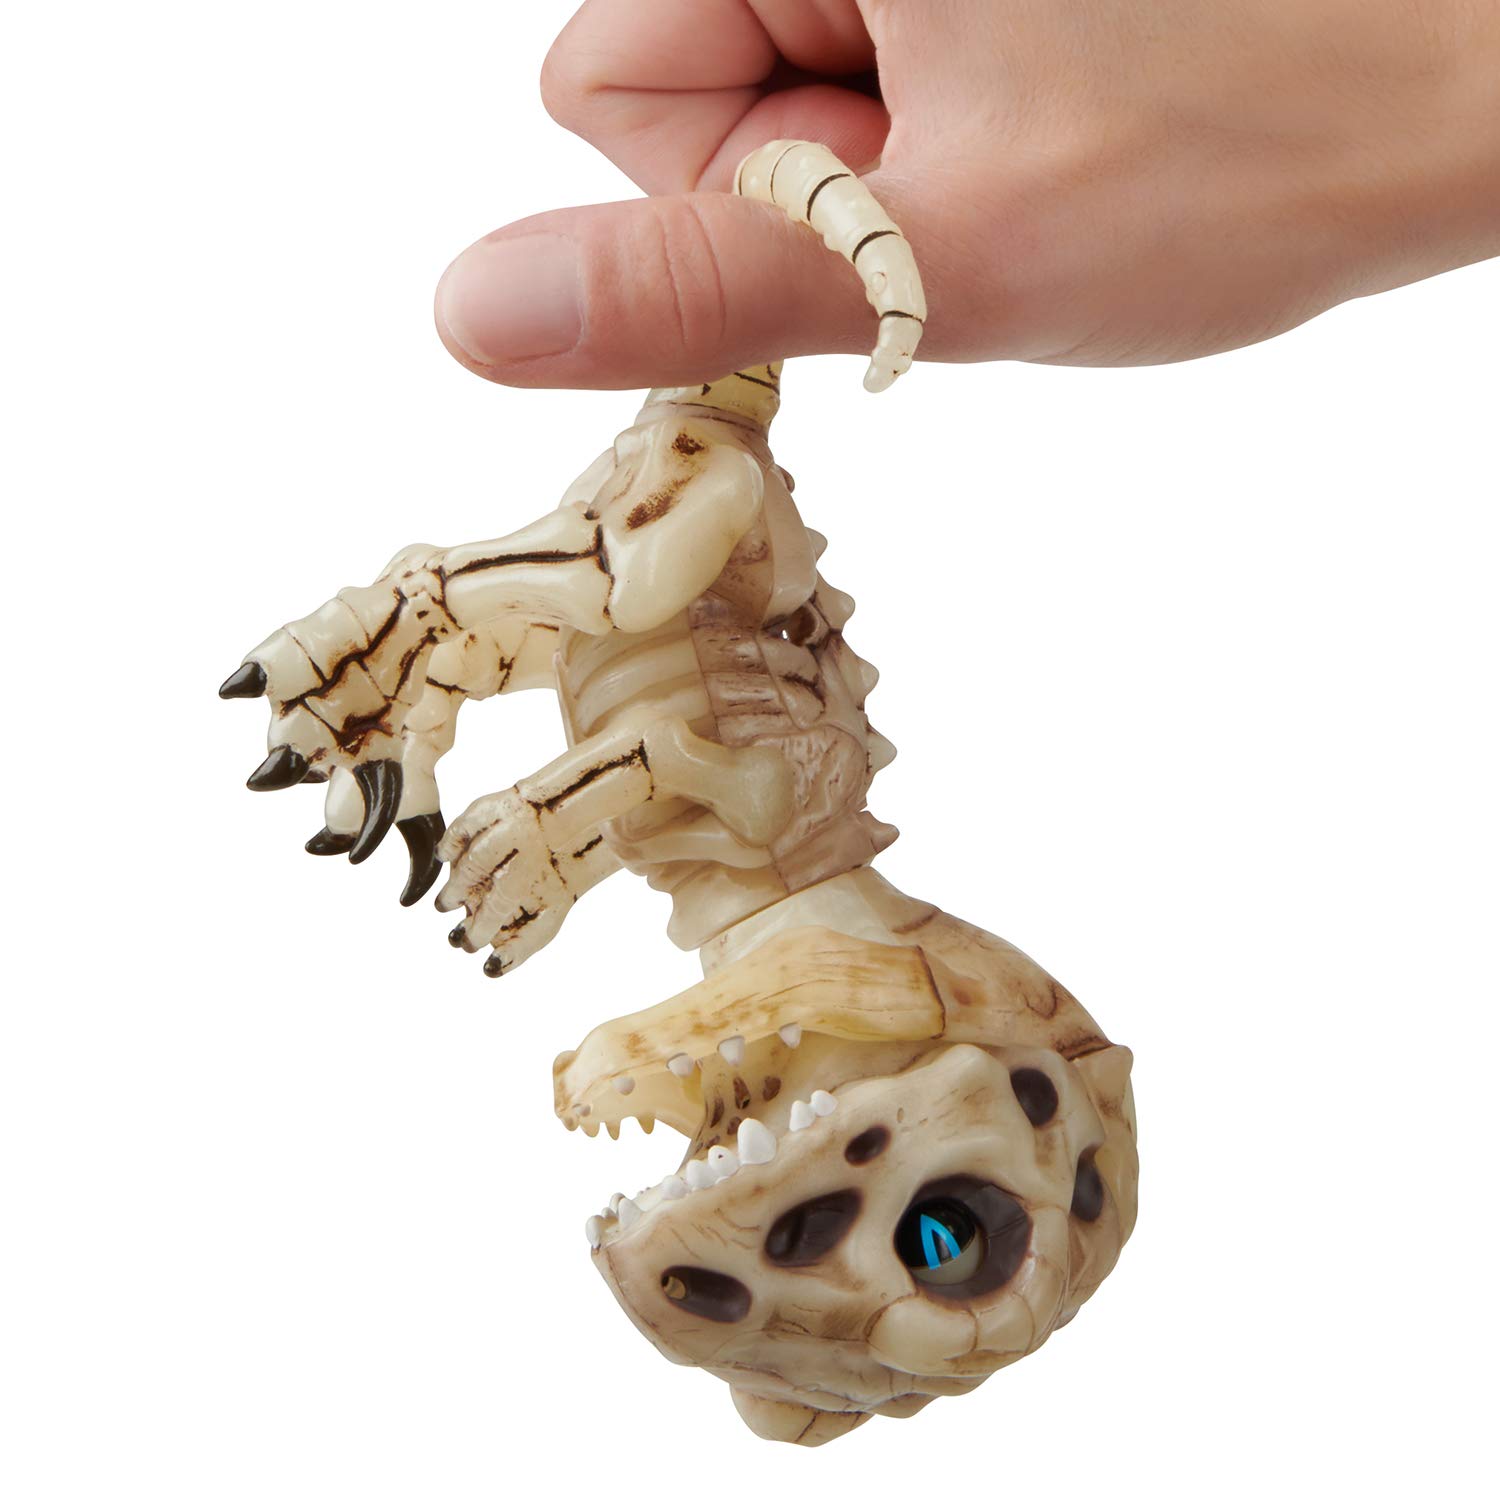 Интерактивная игрушка Fingerlings - Скелетон Глум